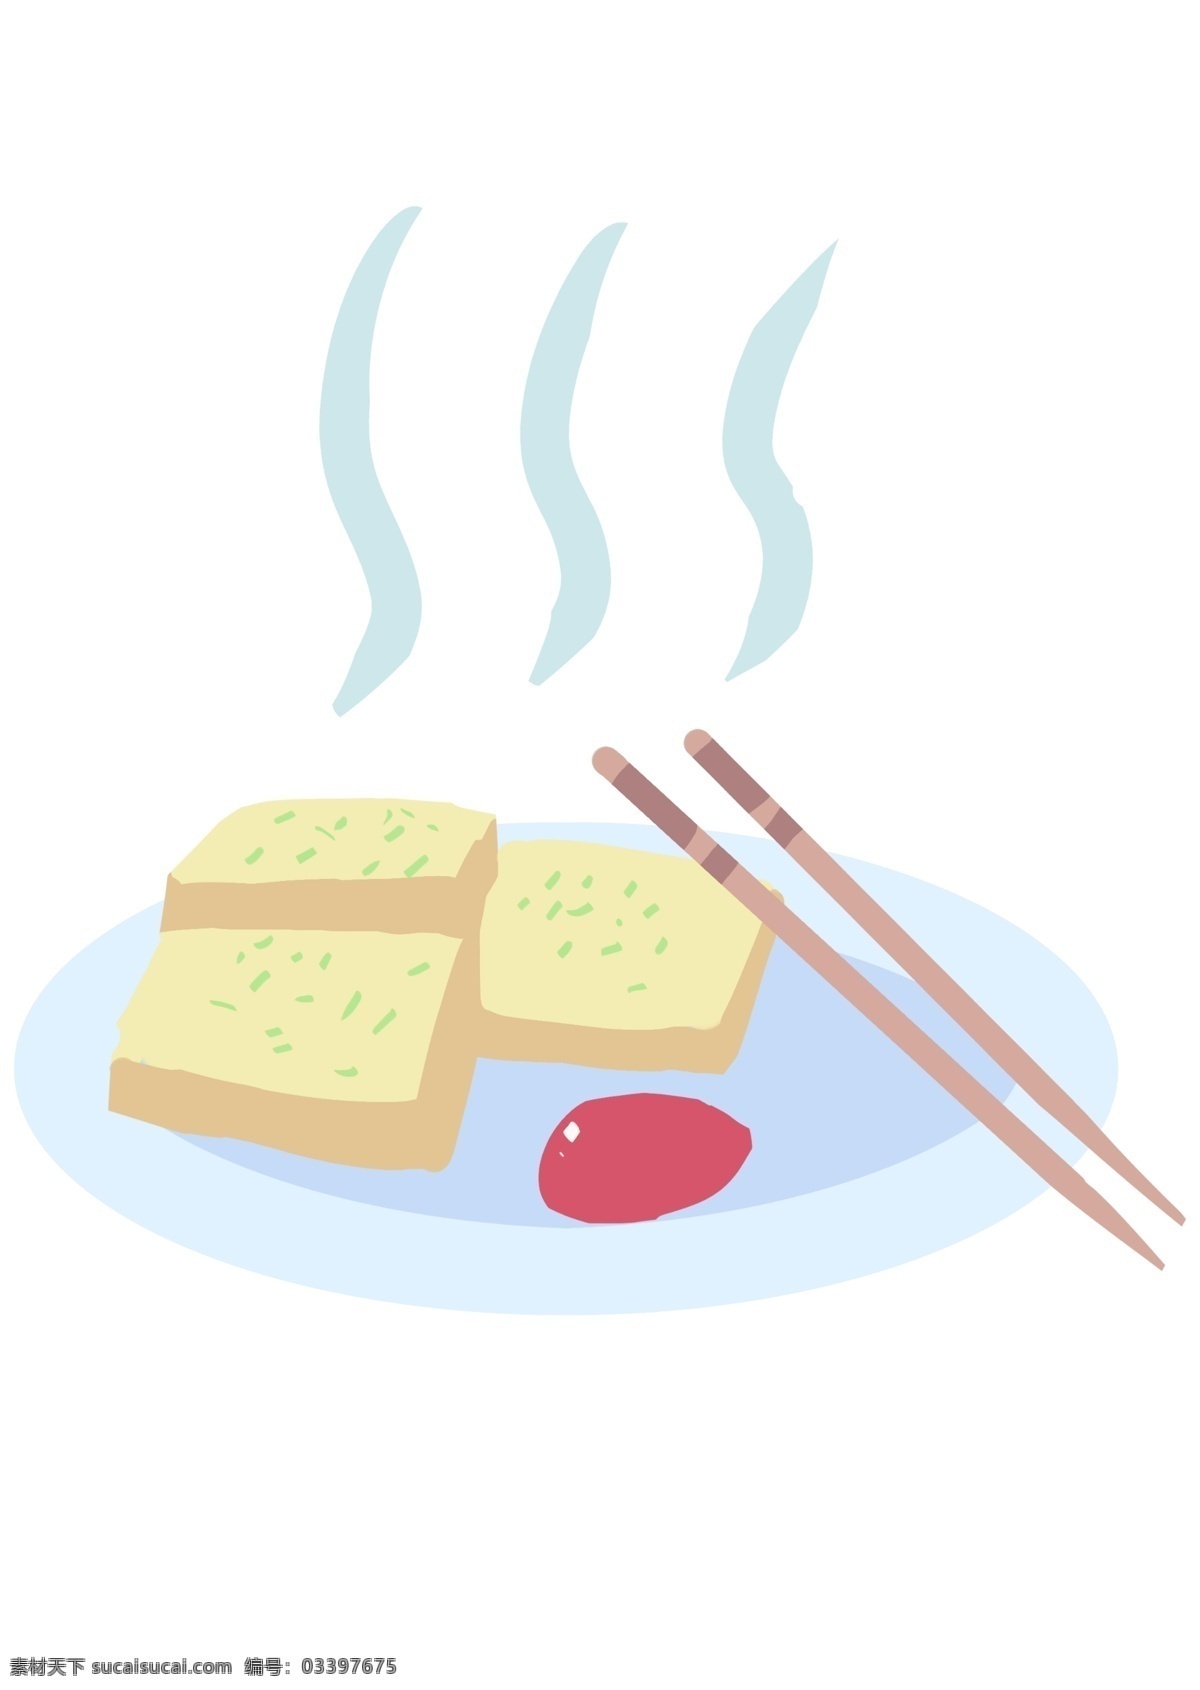 美味 小吃 面包 插画 美味的面包 热腾腾的面包 卡通插画 小吃插画 美味插画 美食插画 食品插画